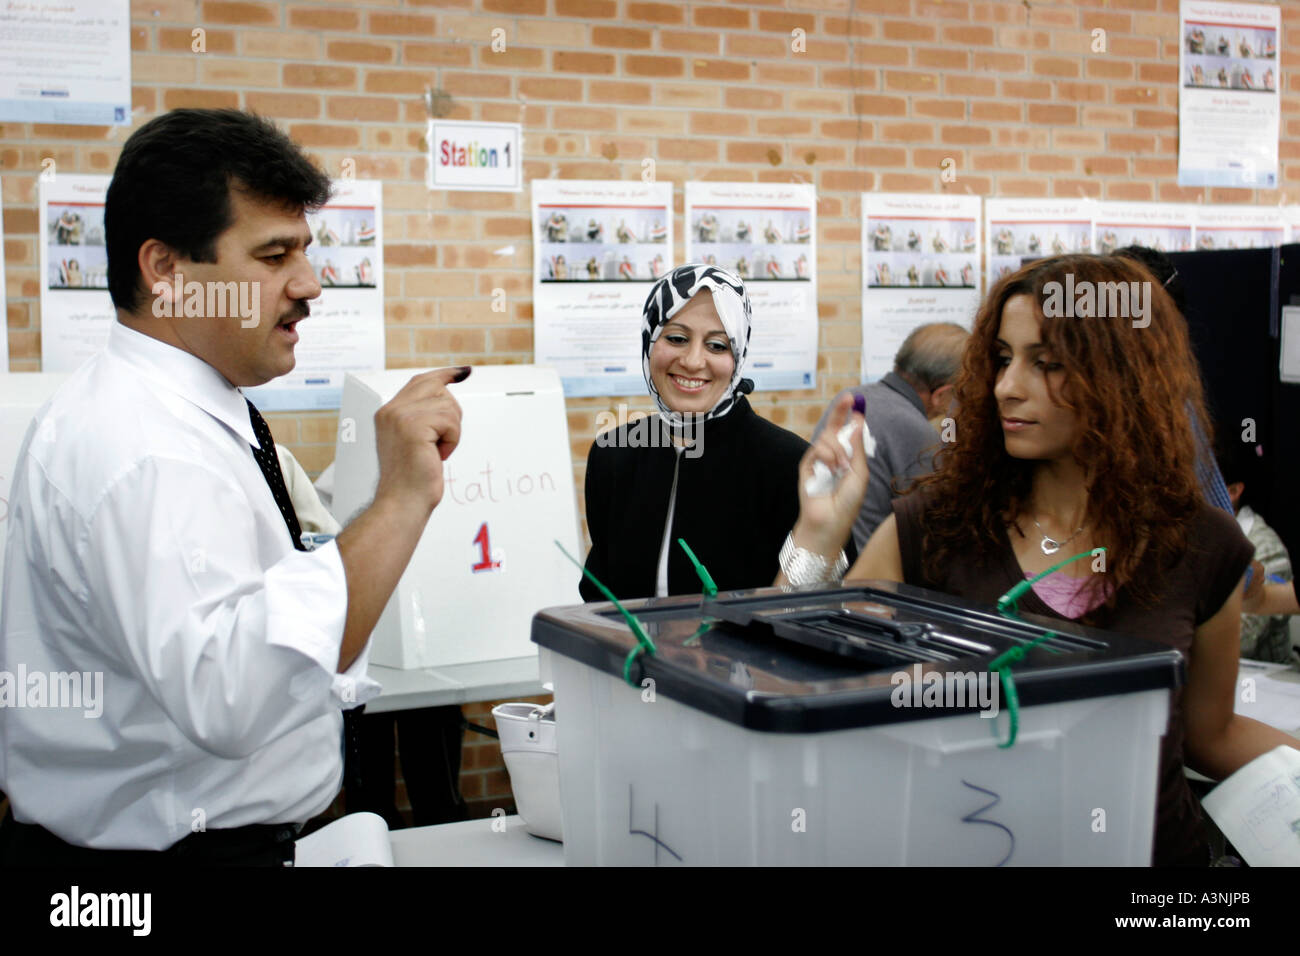 Muslimische Frauen in demokratischen Wahlen für eine irakische Regierung stimmen lächelnd Stockfoto